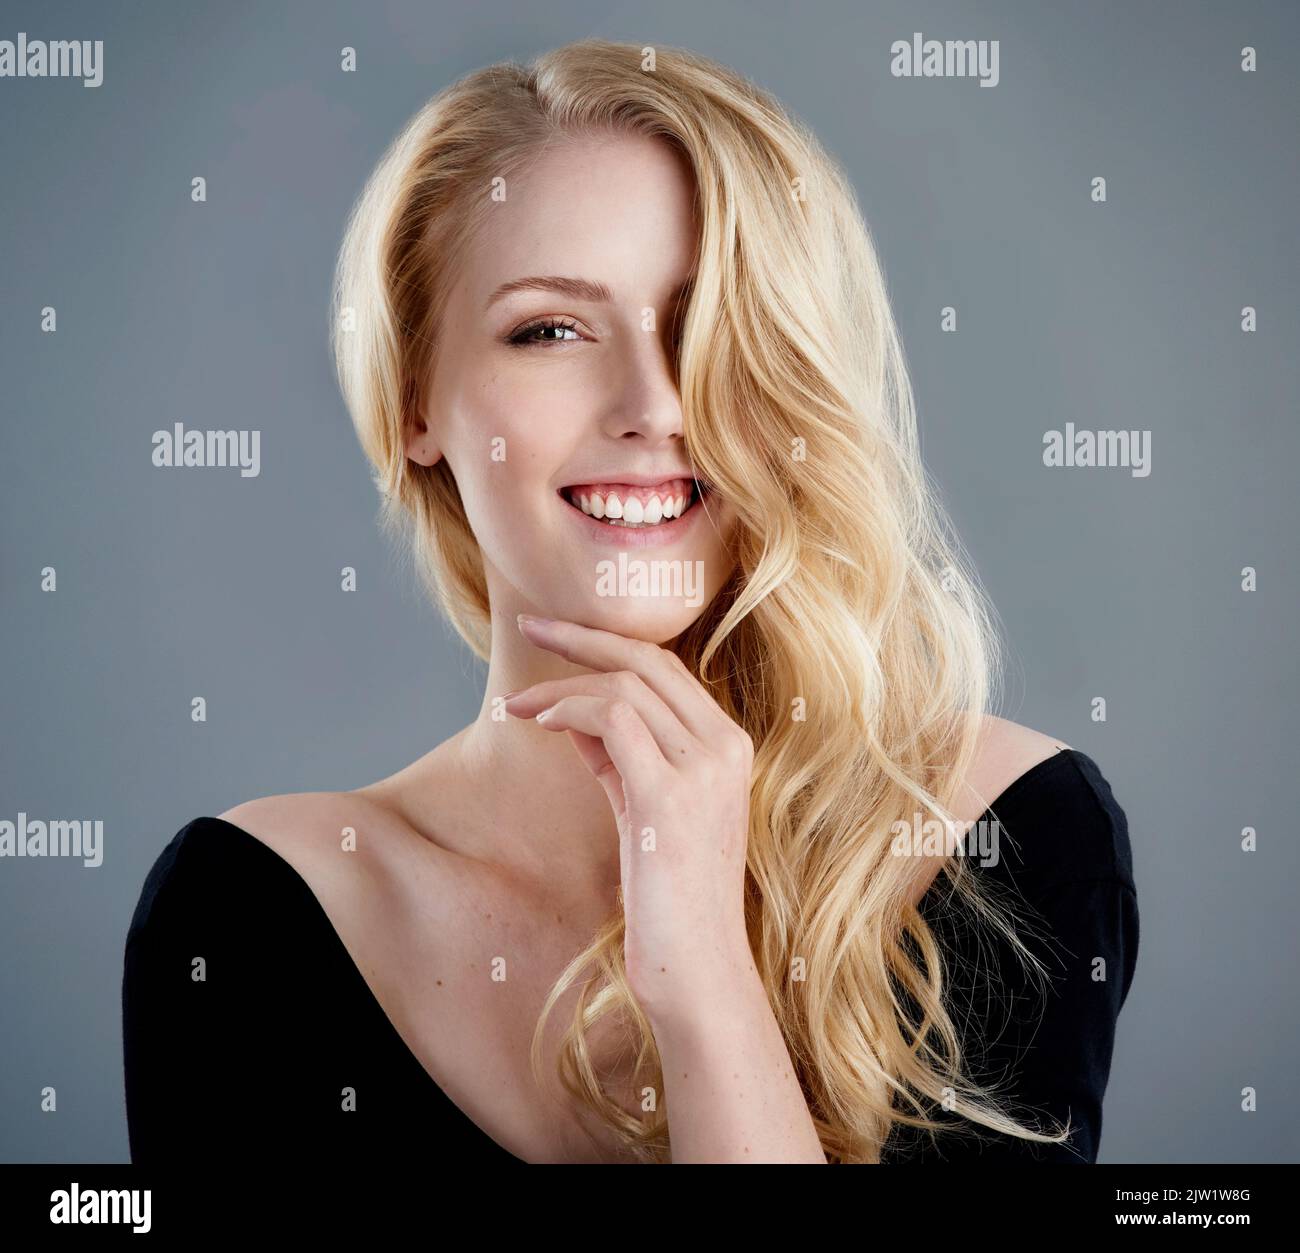 Une confiance qui correspond à sa beauté. Studio portrait d'une jeune femme attrayante avec de beaux cheveux blond longs posant sur un fond gris. Banque D'Images